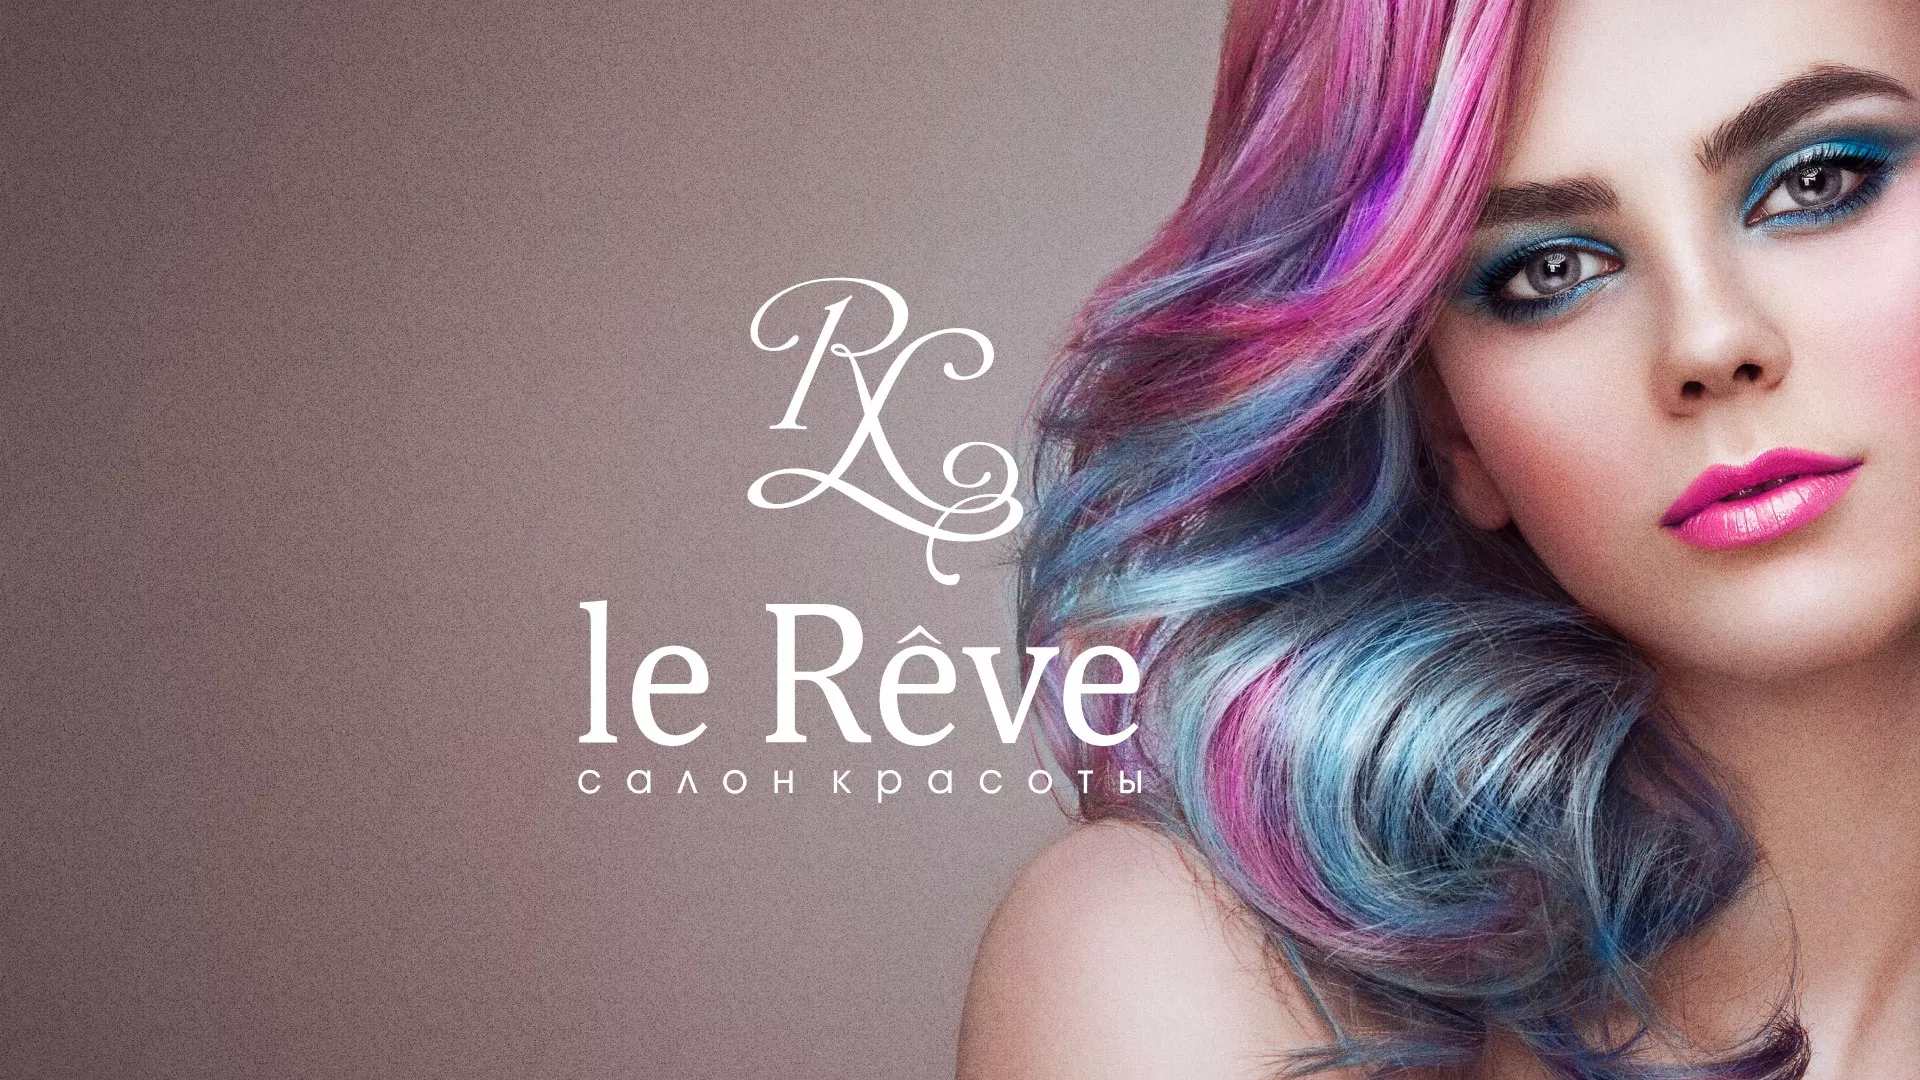 Создание сайта для салона красоты «Le Reve» в Няндоме